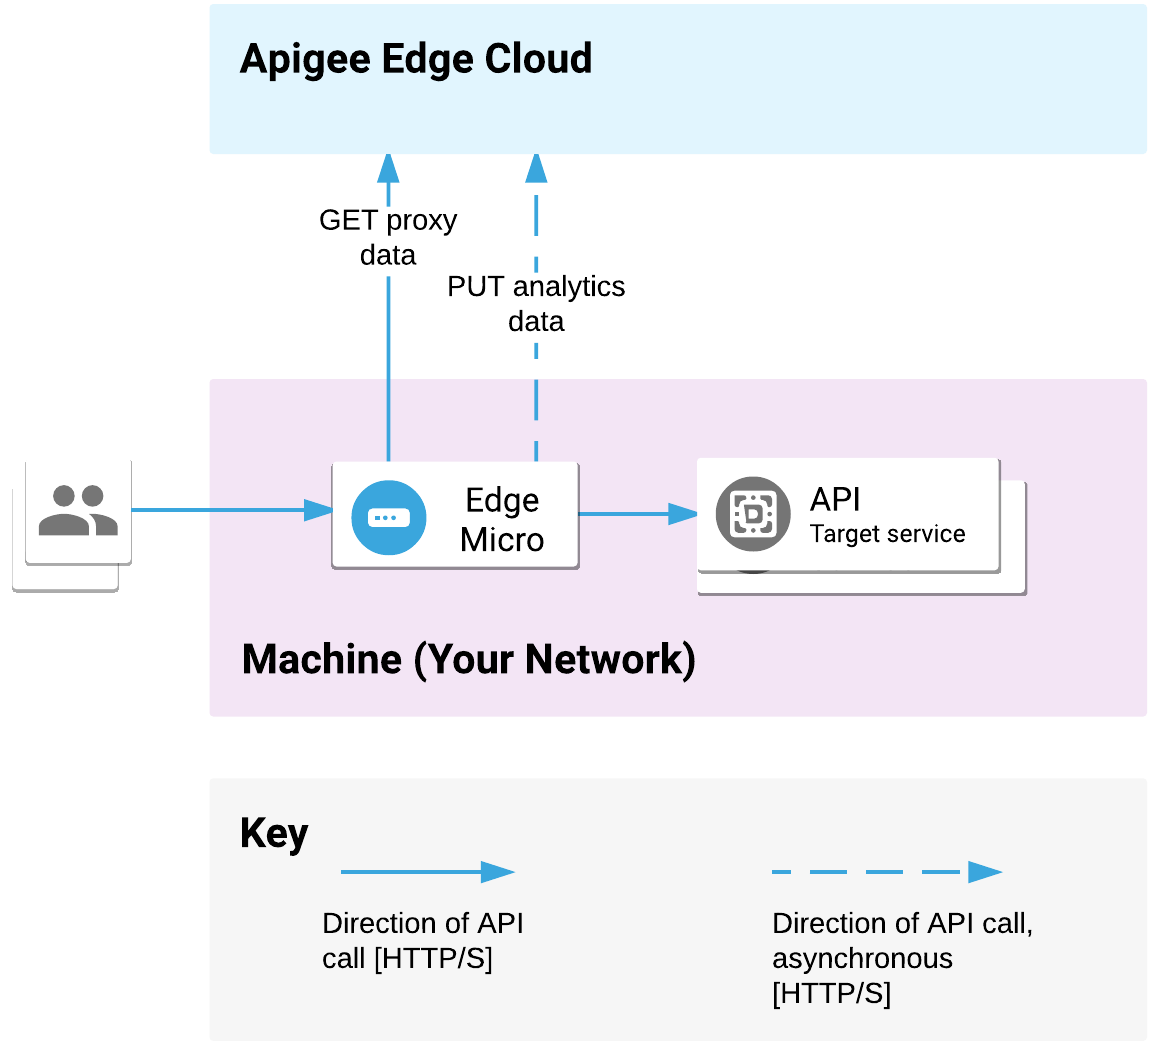 Microgateway edge di-deploy di jaringan Anda. Fungsi ini memproses permintaan API
             dari klien dan memanggil layanan target. Microgateway mengomunikasikan data
             analisis dan proxy
             dengan Apigee Edge Cloud.